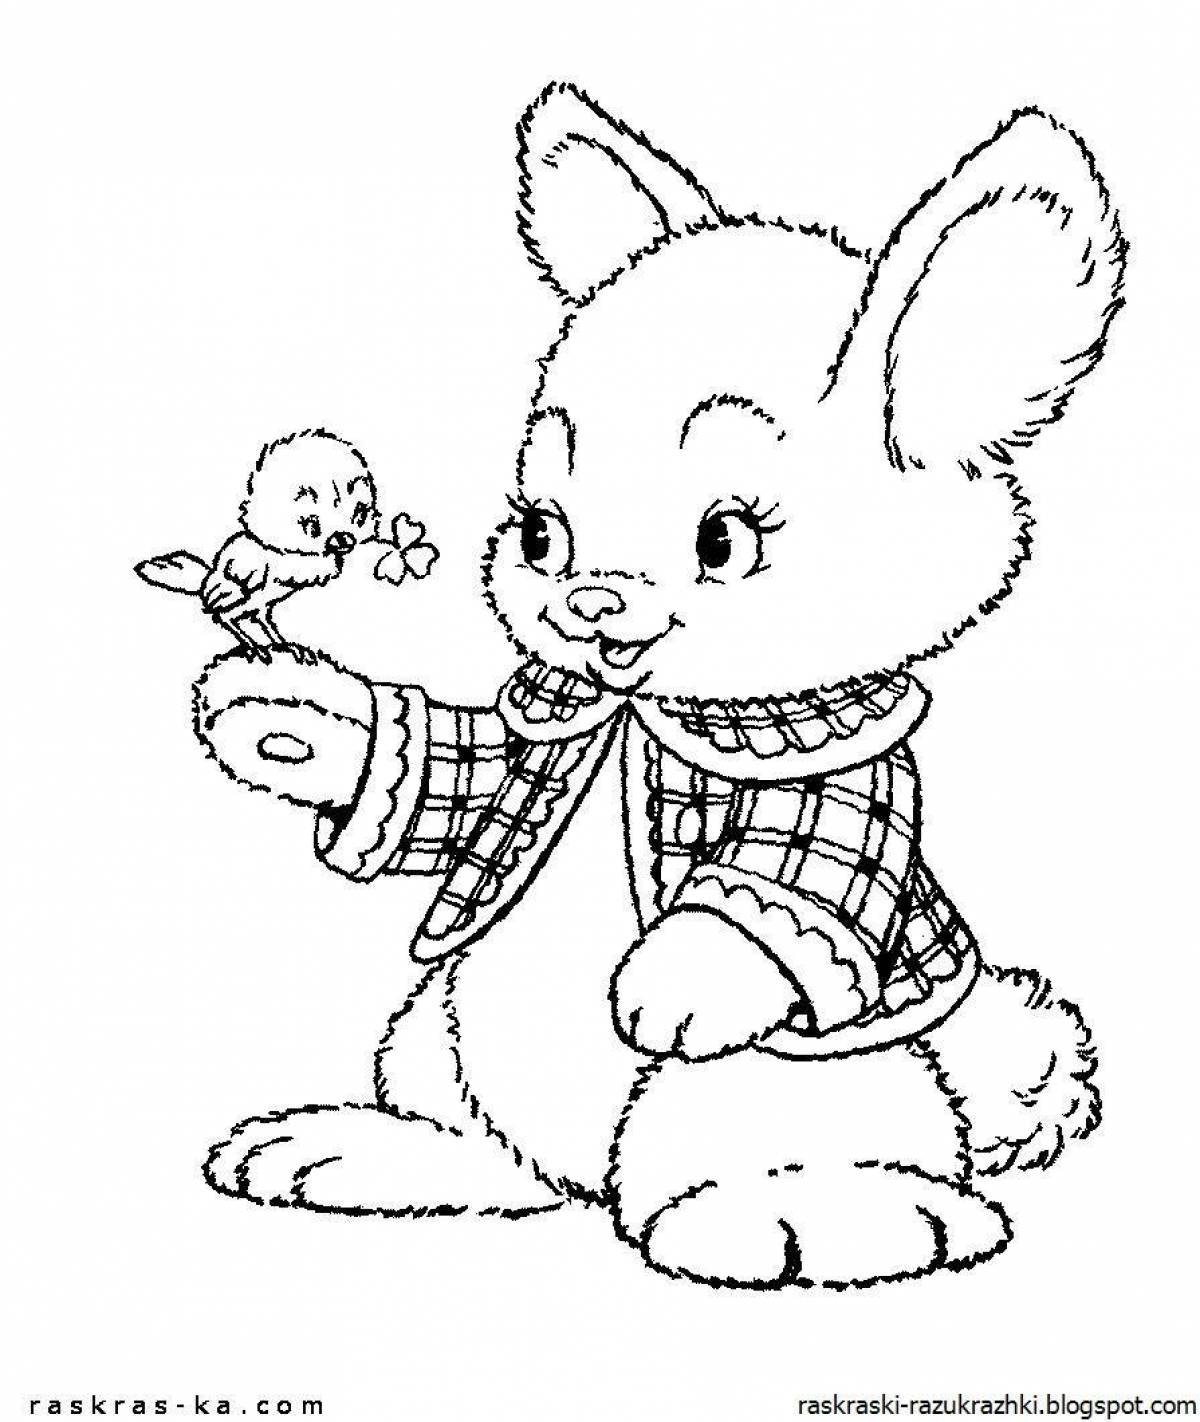 Причудливая раскраска кролик для детей 3-4 лет